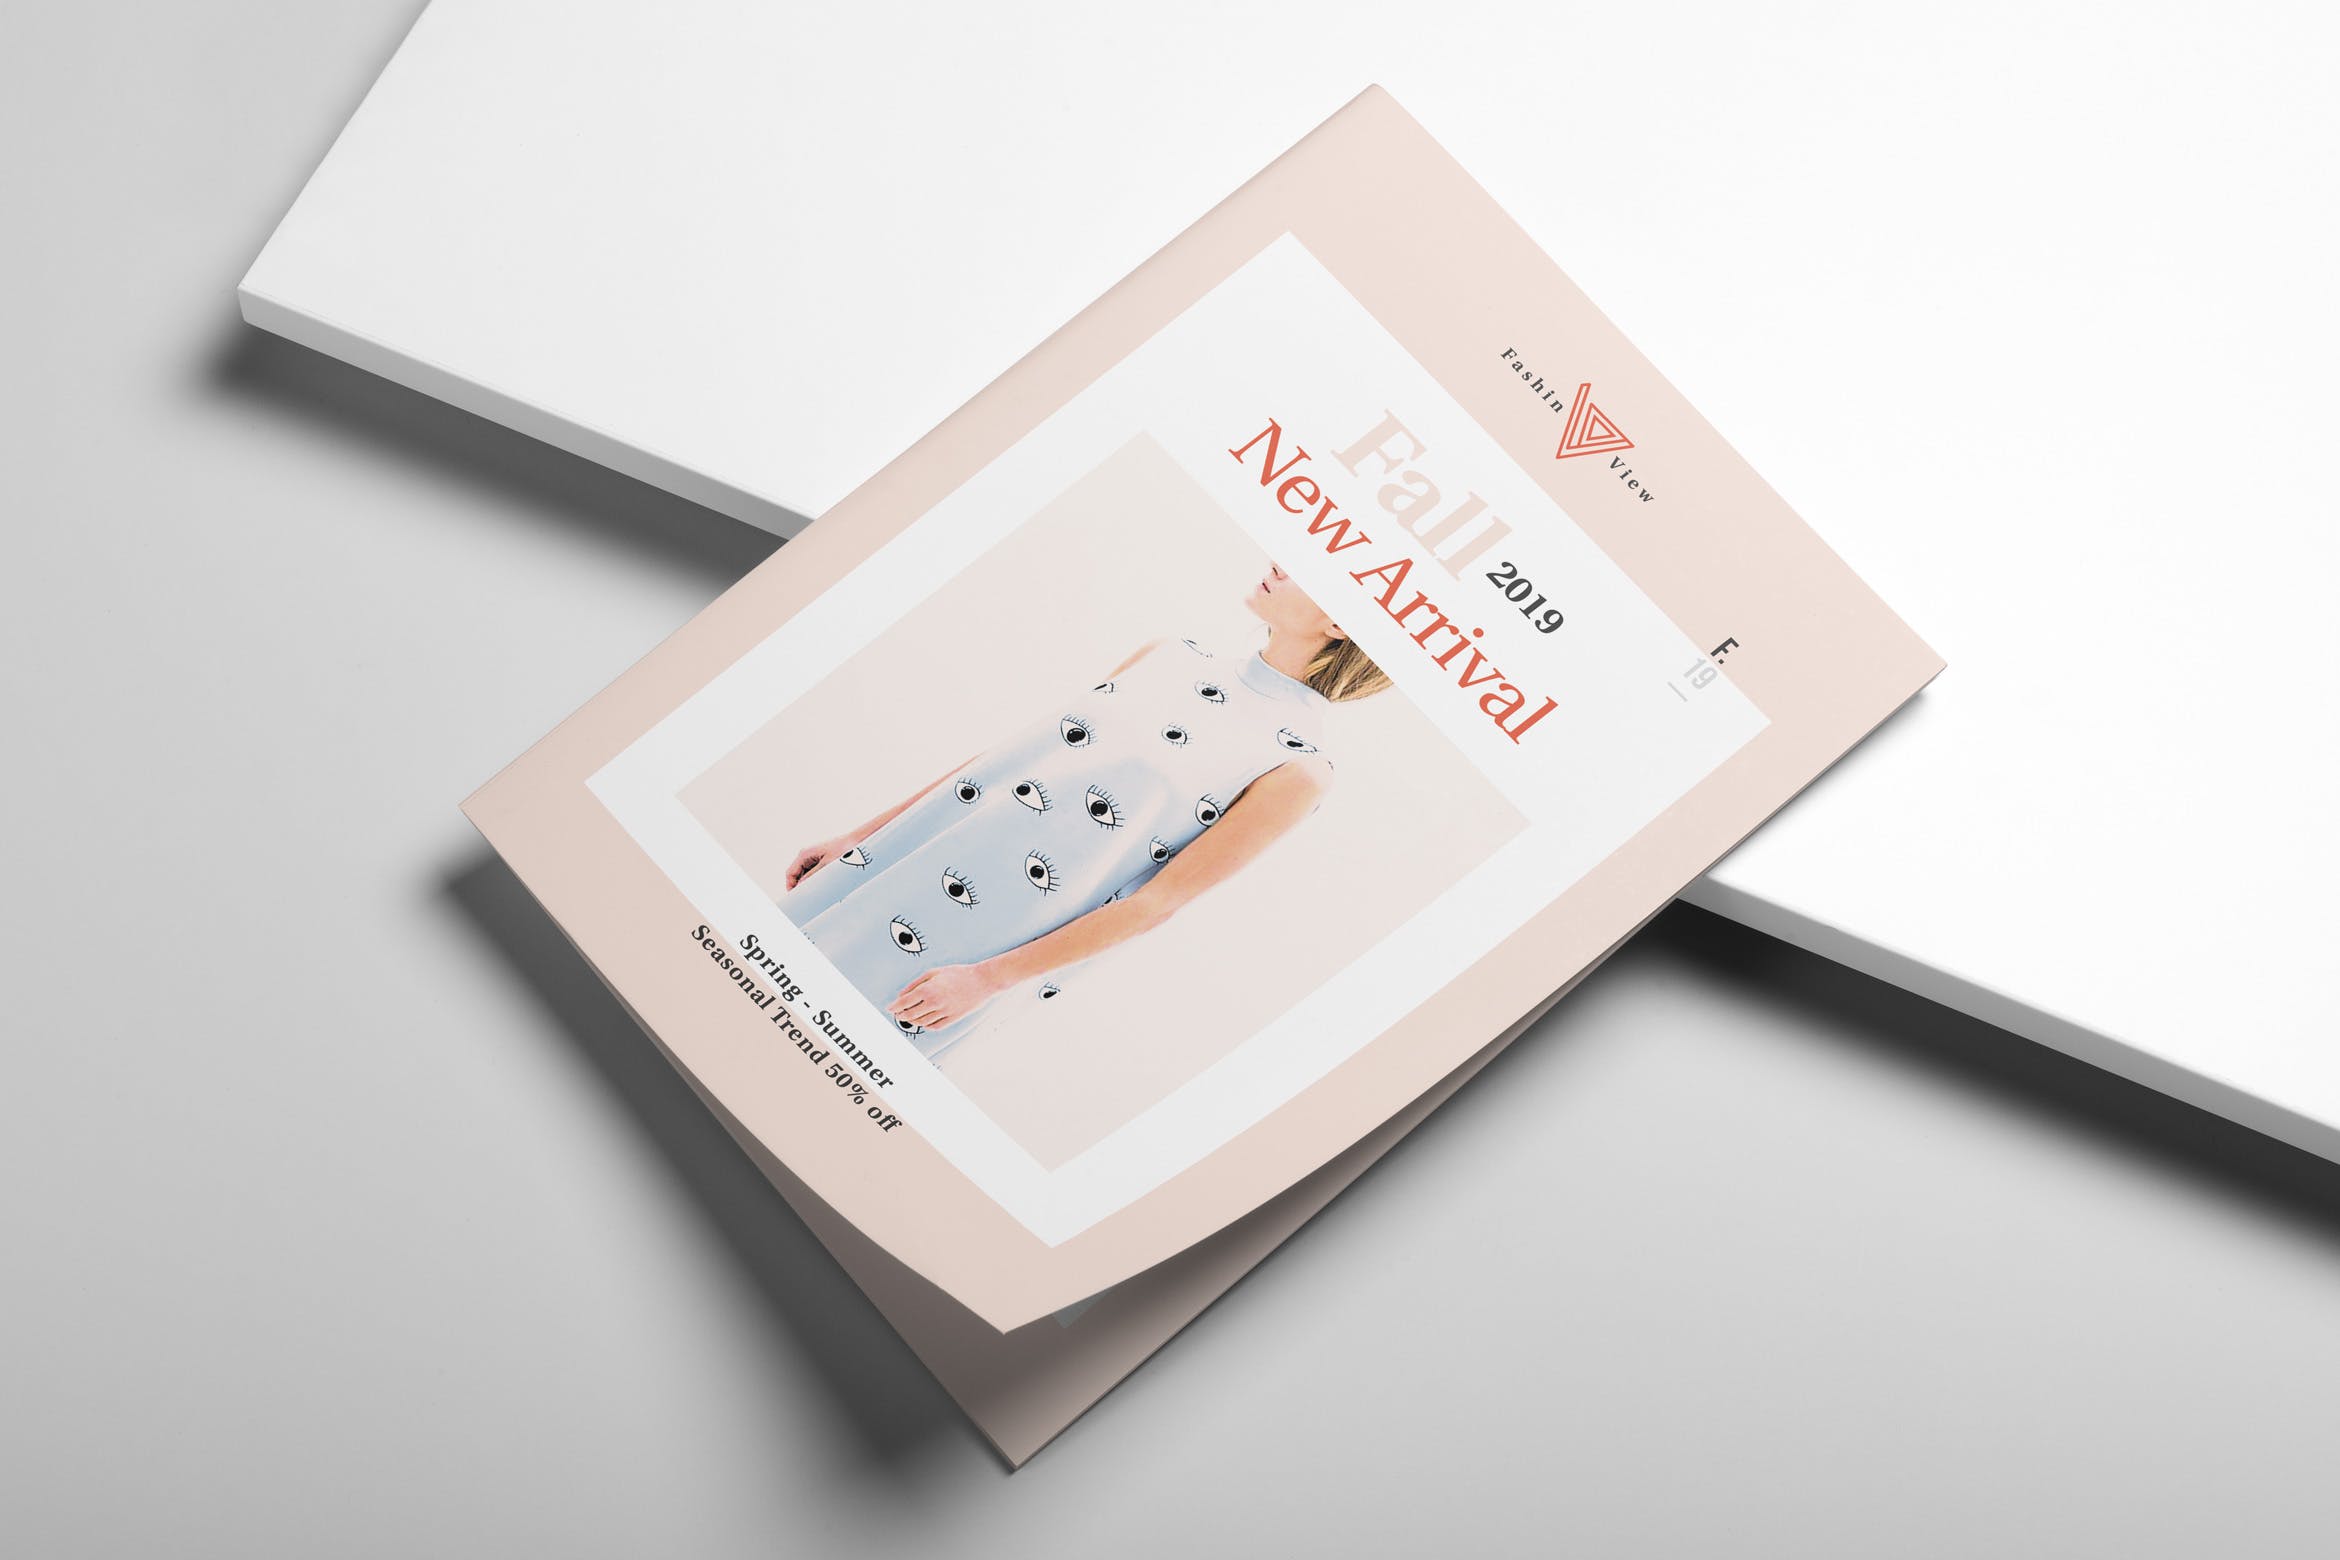 高端服装品牌新装上市画册/产品目录设计模板 Fashion Bifold Brochure插图